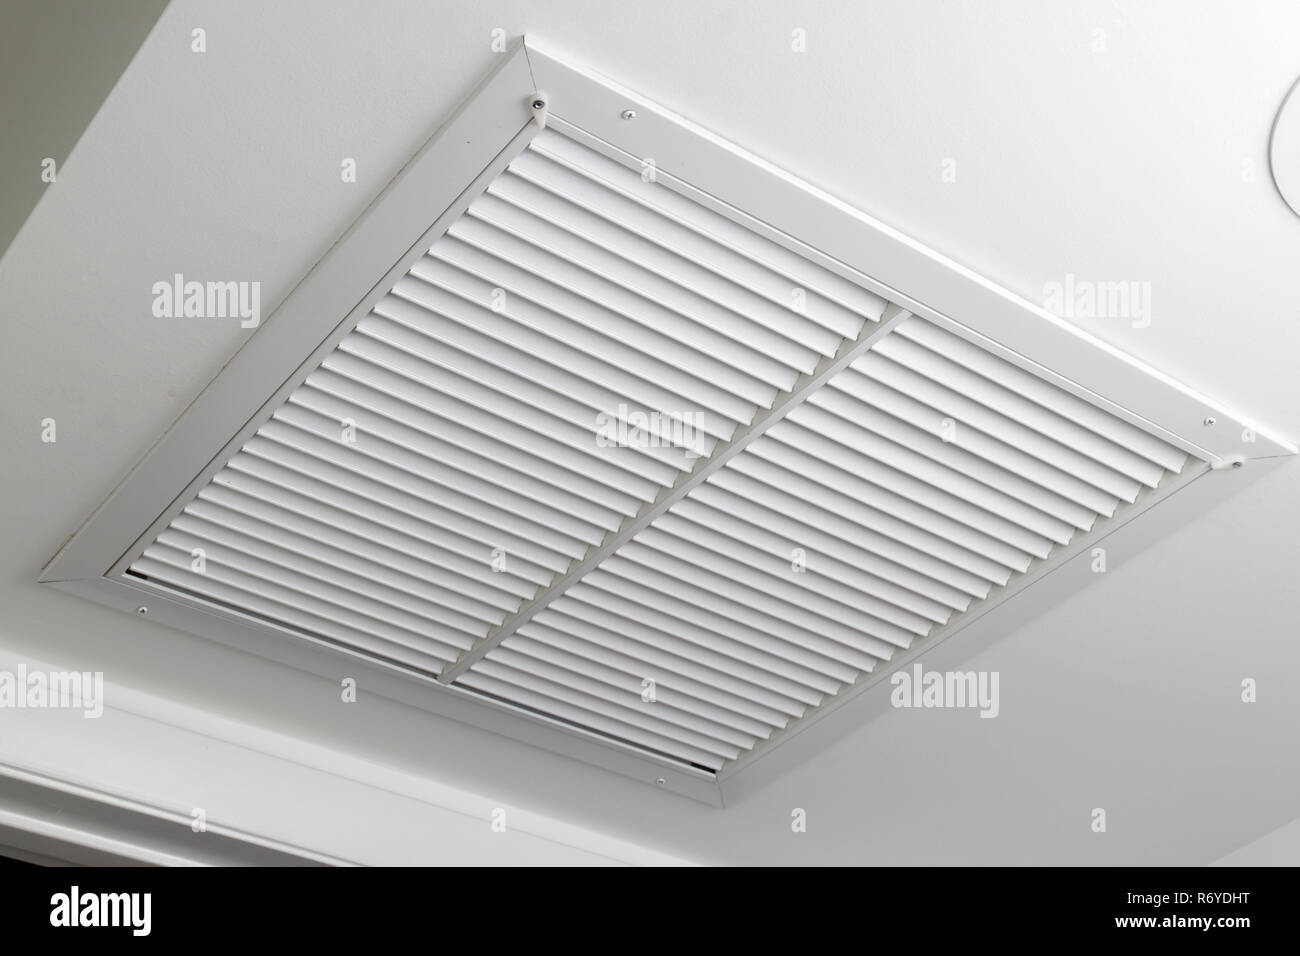 Filtre à air au plafond blanc grille de ventilation Photo Stock - Alamy